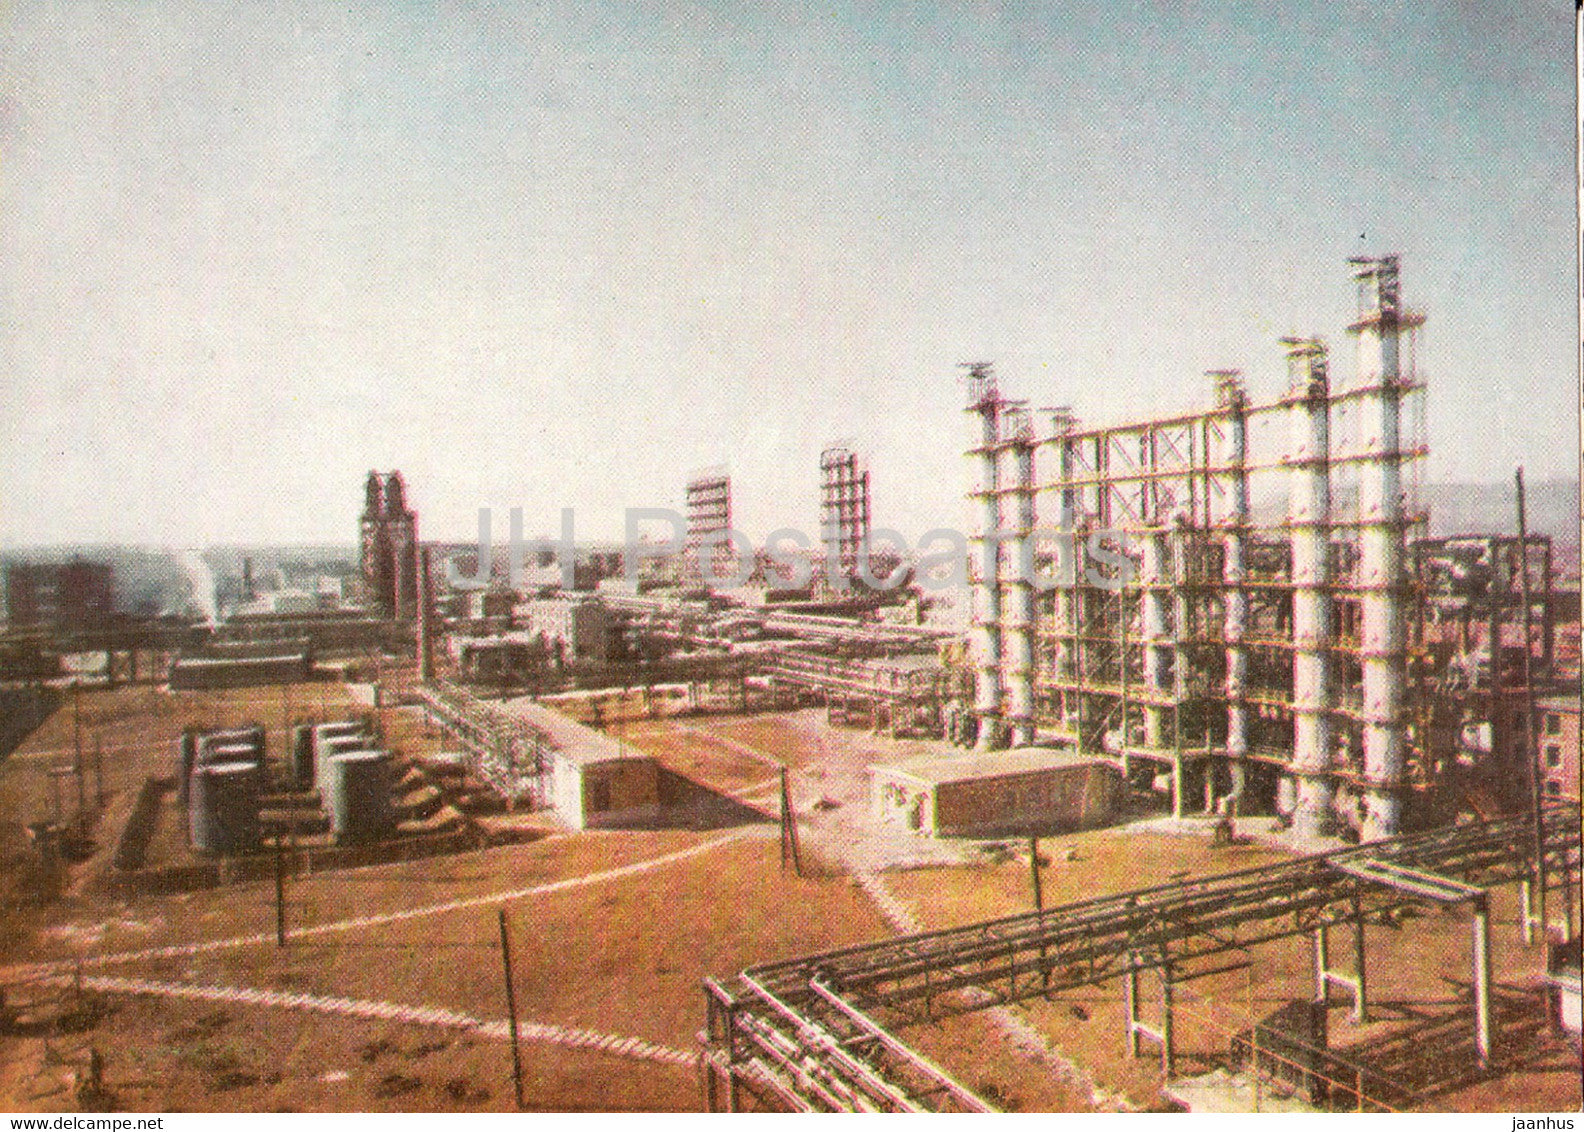 Onesti - industry - 1965 - Romania - unused - JH Postcards